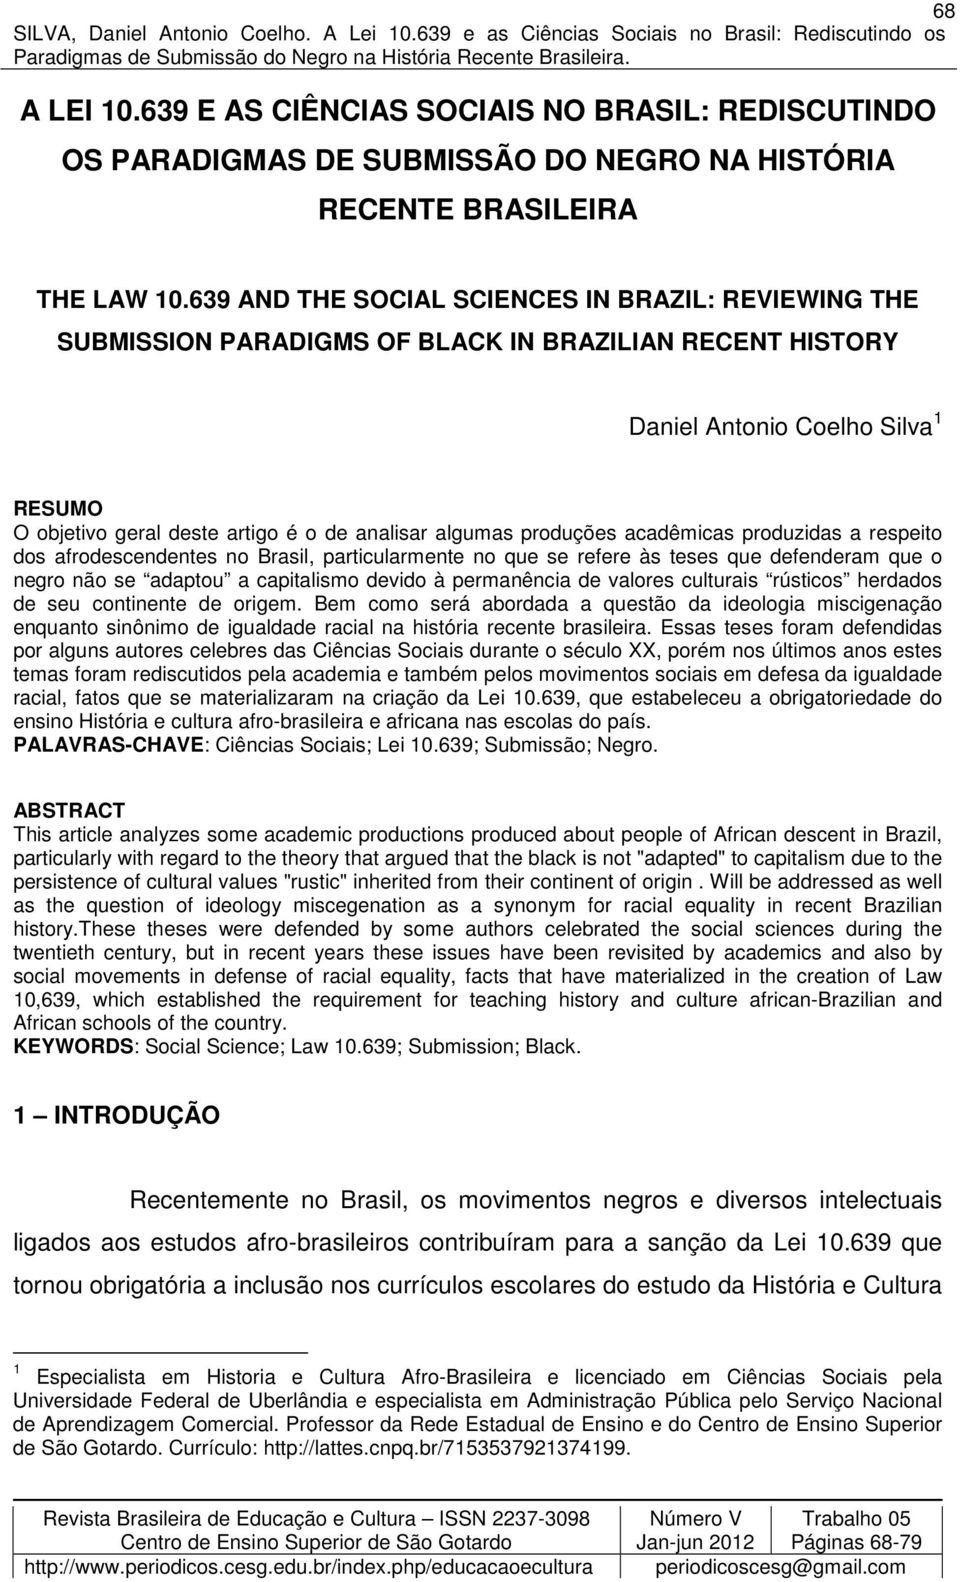 algumas produções acadêmicas produzidas a respeito dos afrodescendentes no Brasil, particularmente no que se refere às teses que defenderam que o negro não se adaptou a capitalismo devido à